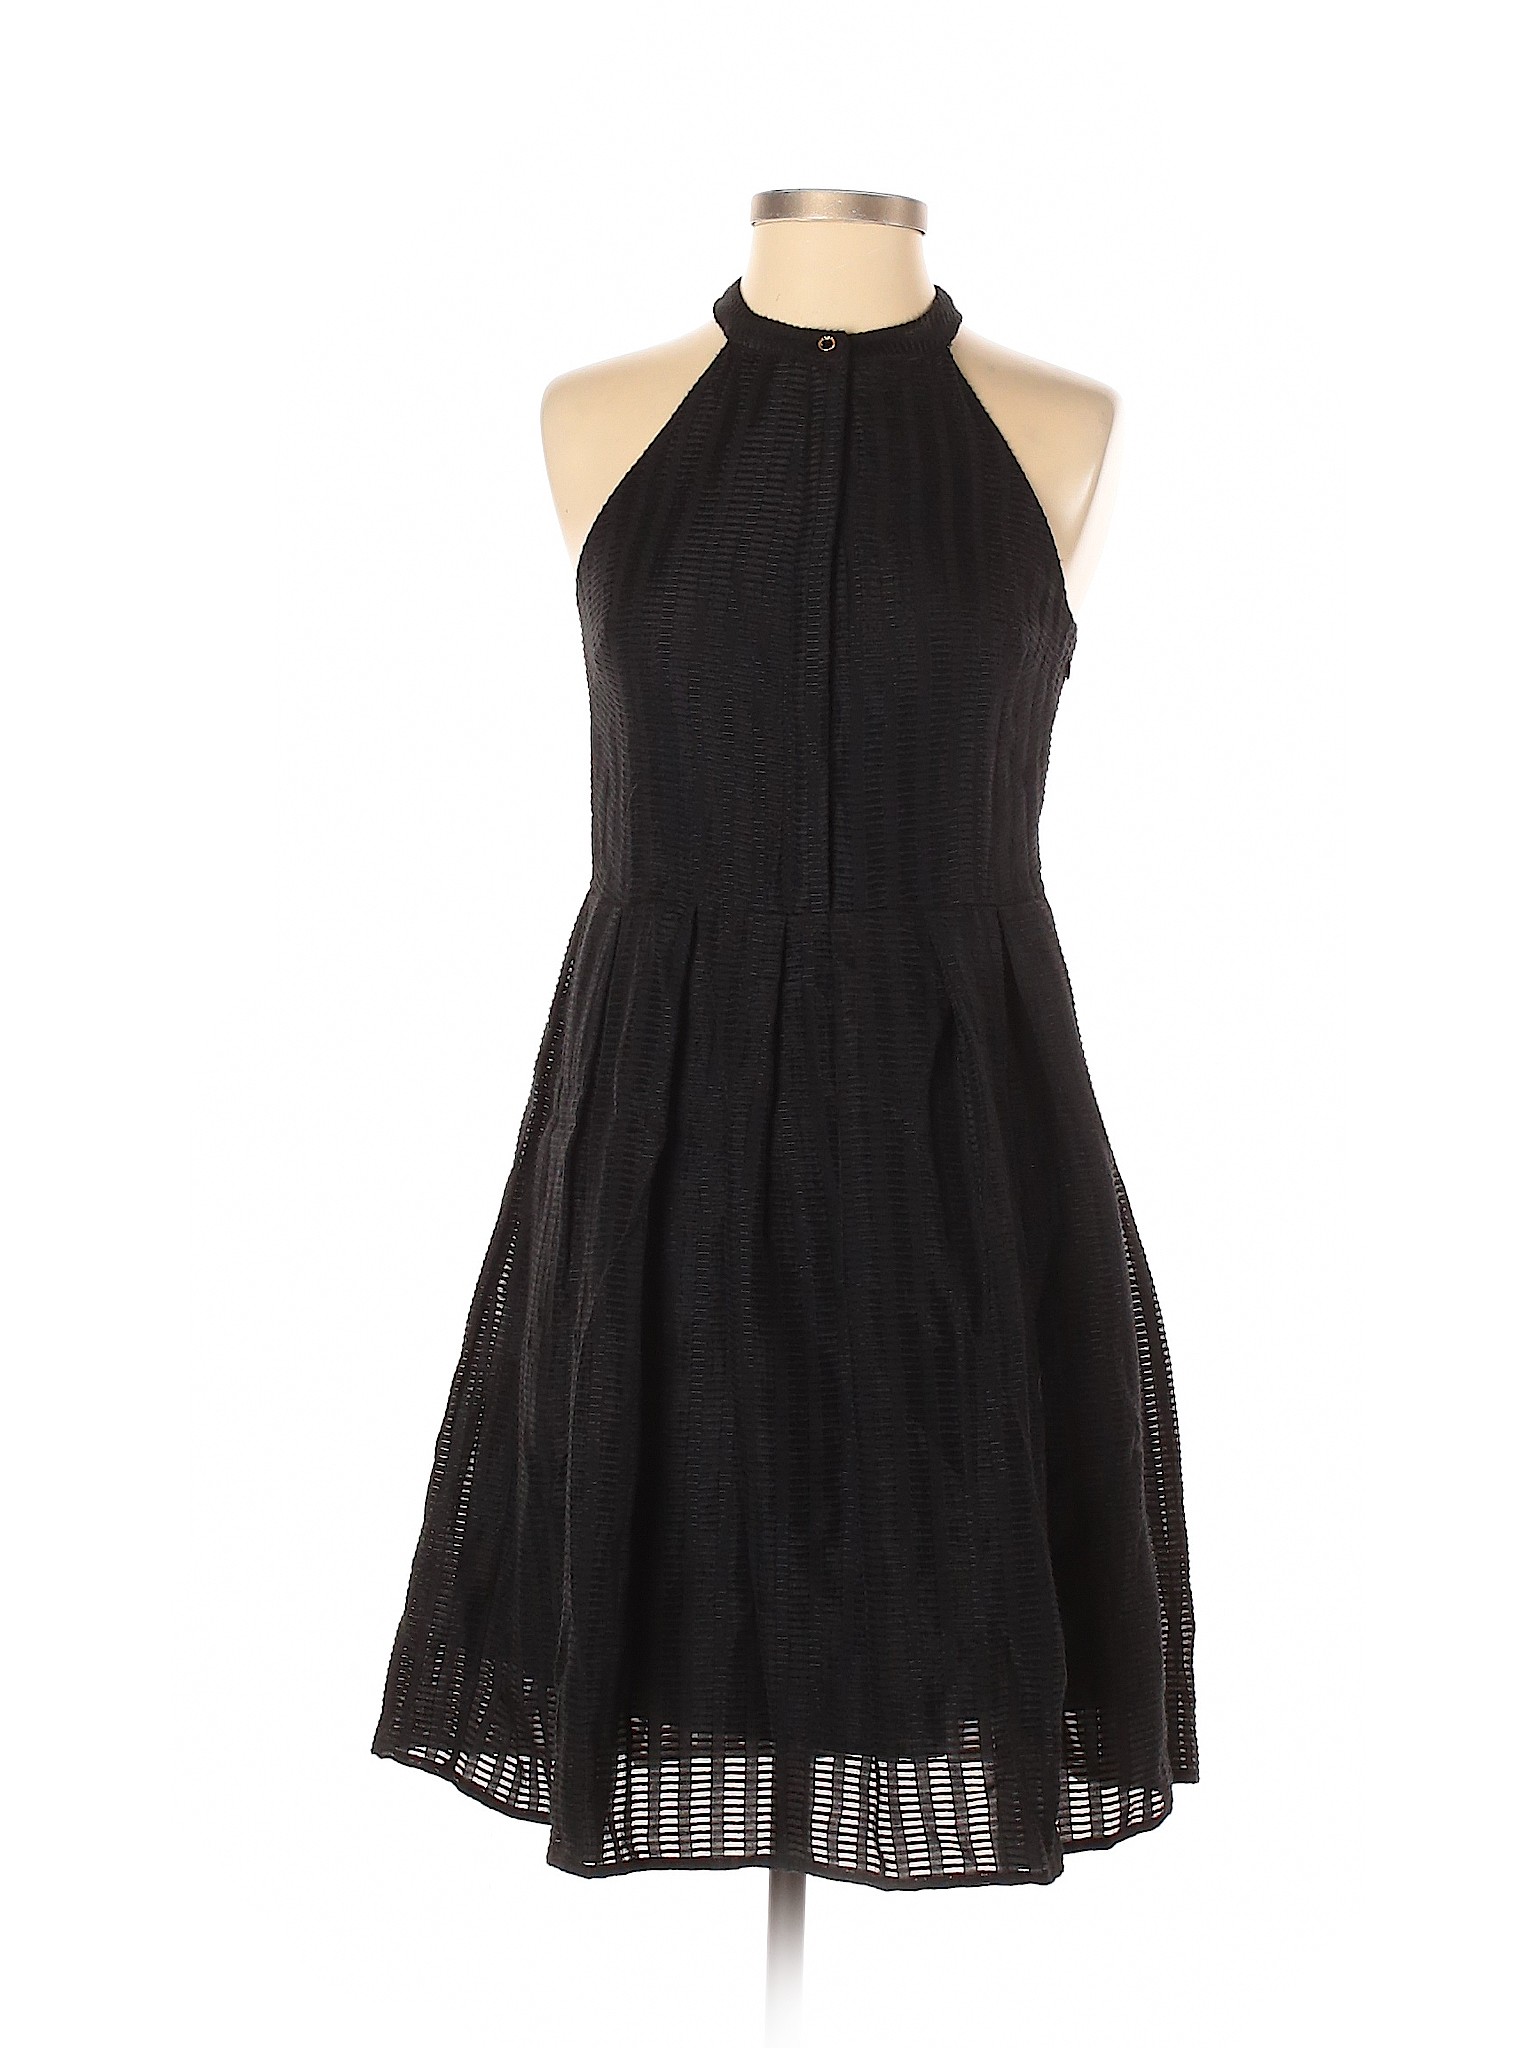 Cynthia Steffe Women Black Cocktail Dress 2 | eBay